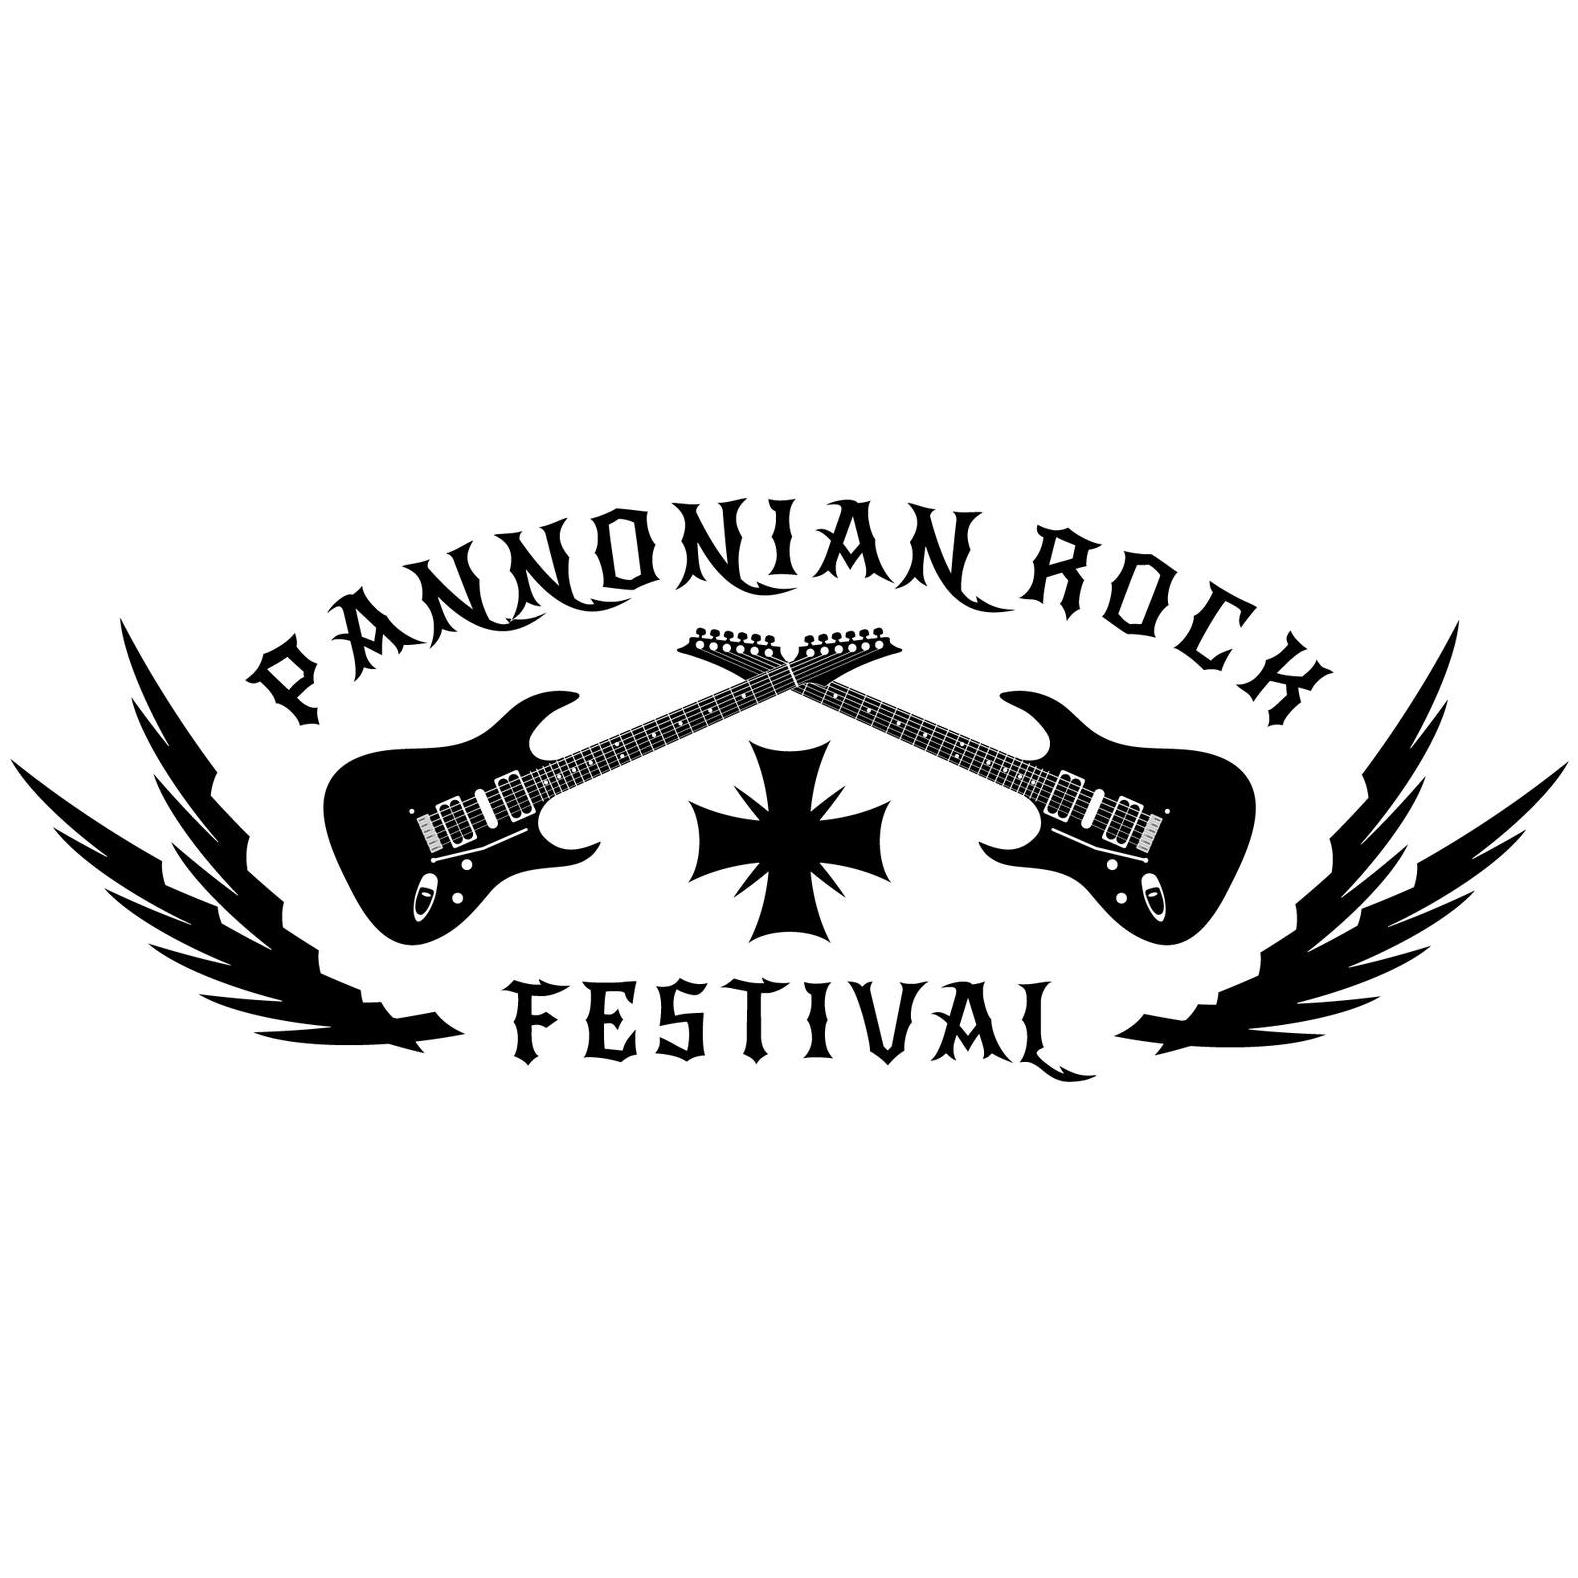 Pannonian Rock Festival